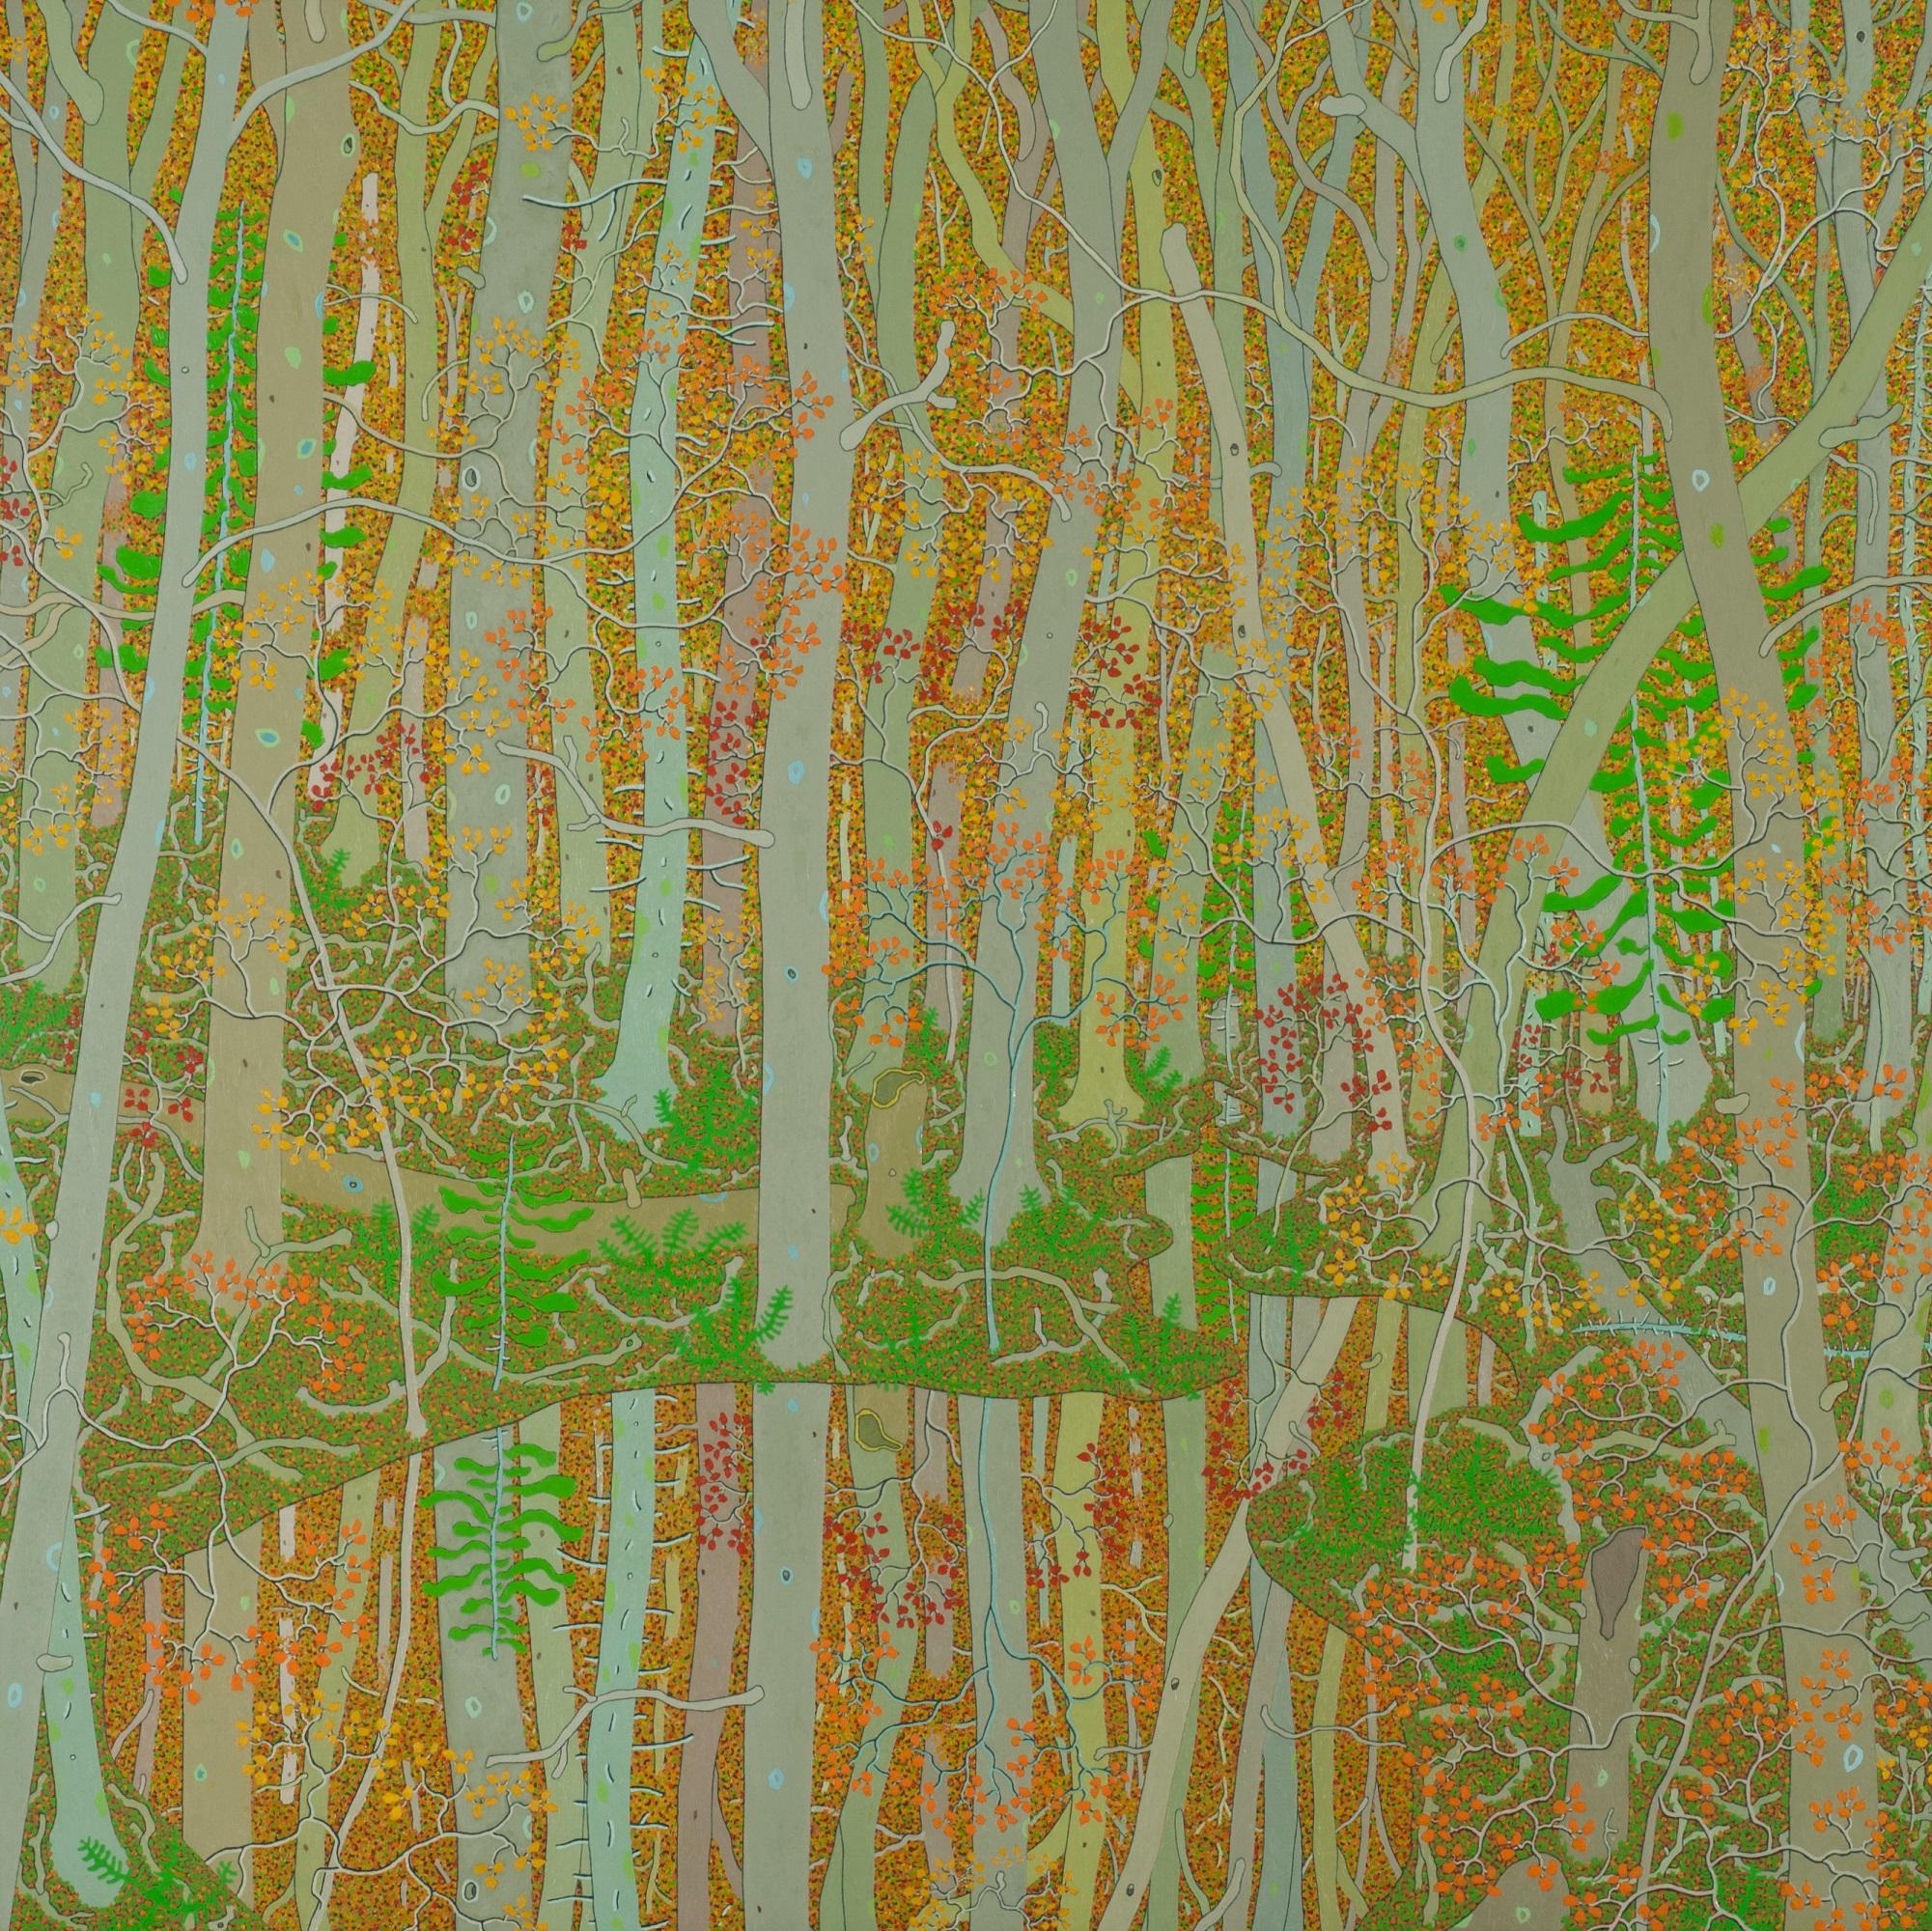 Landscape Painting Gregory Hennen - Reflections at the Spring's Entrance (Réflections à l'entrée du printemps), paysage forêt, beige, orange, vert